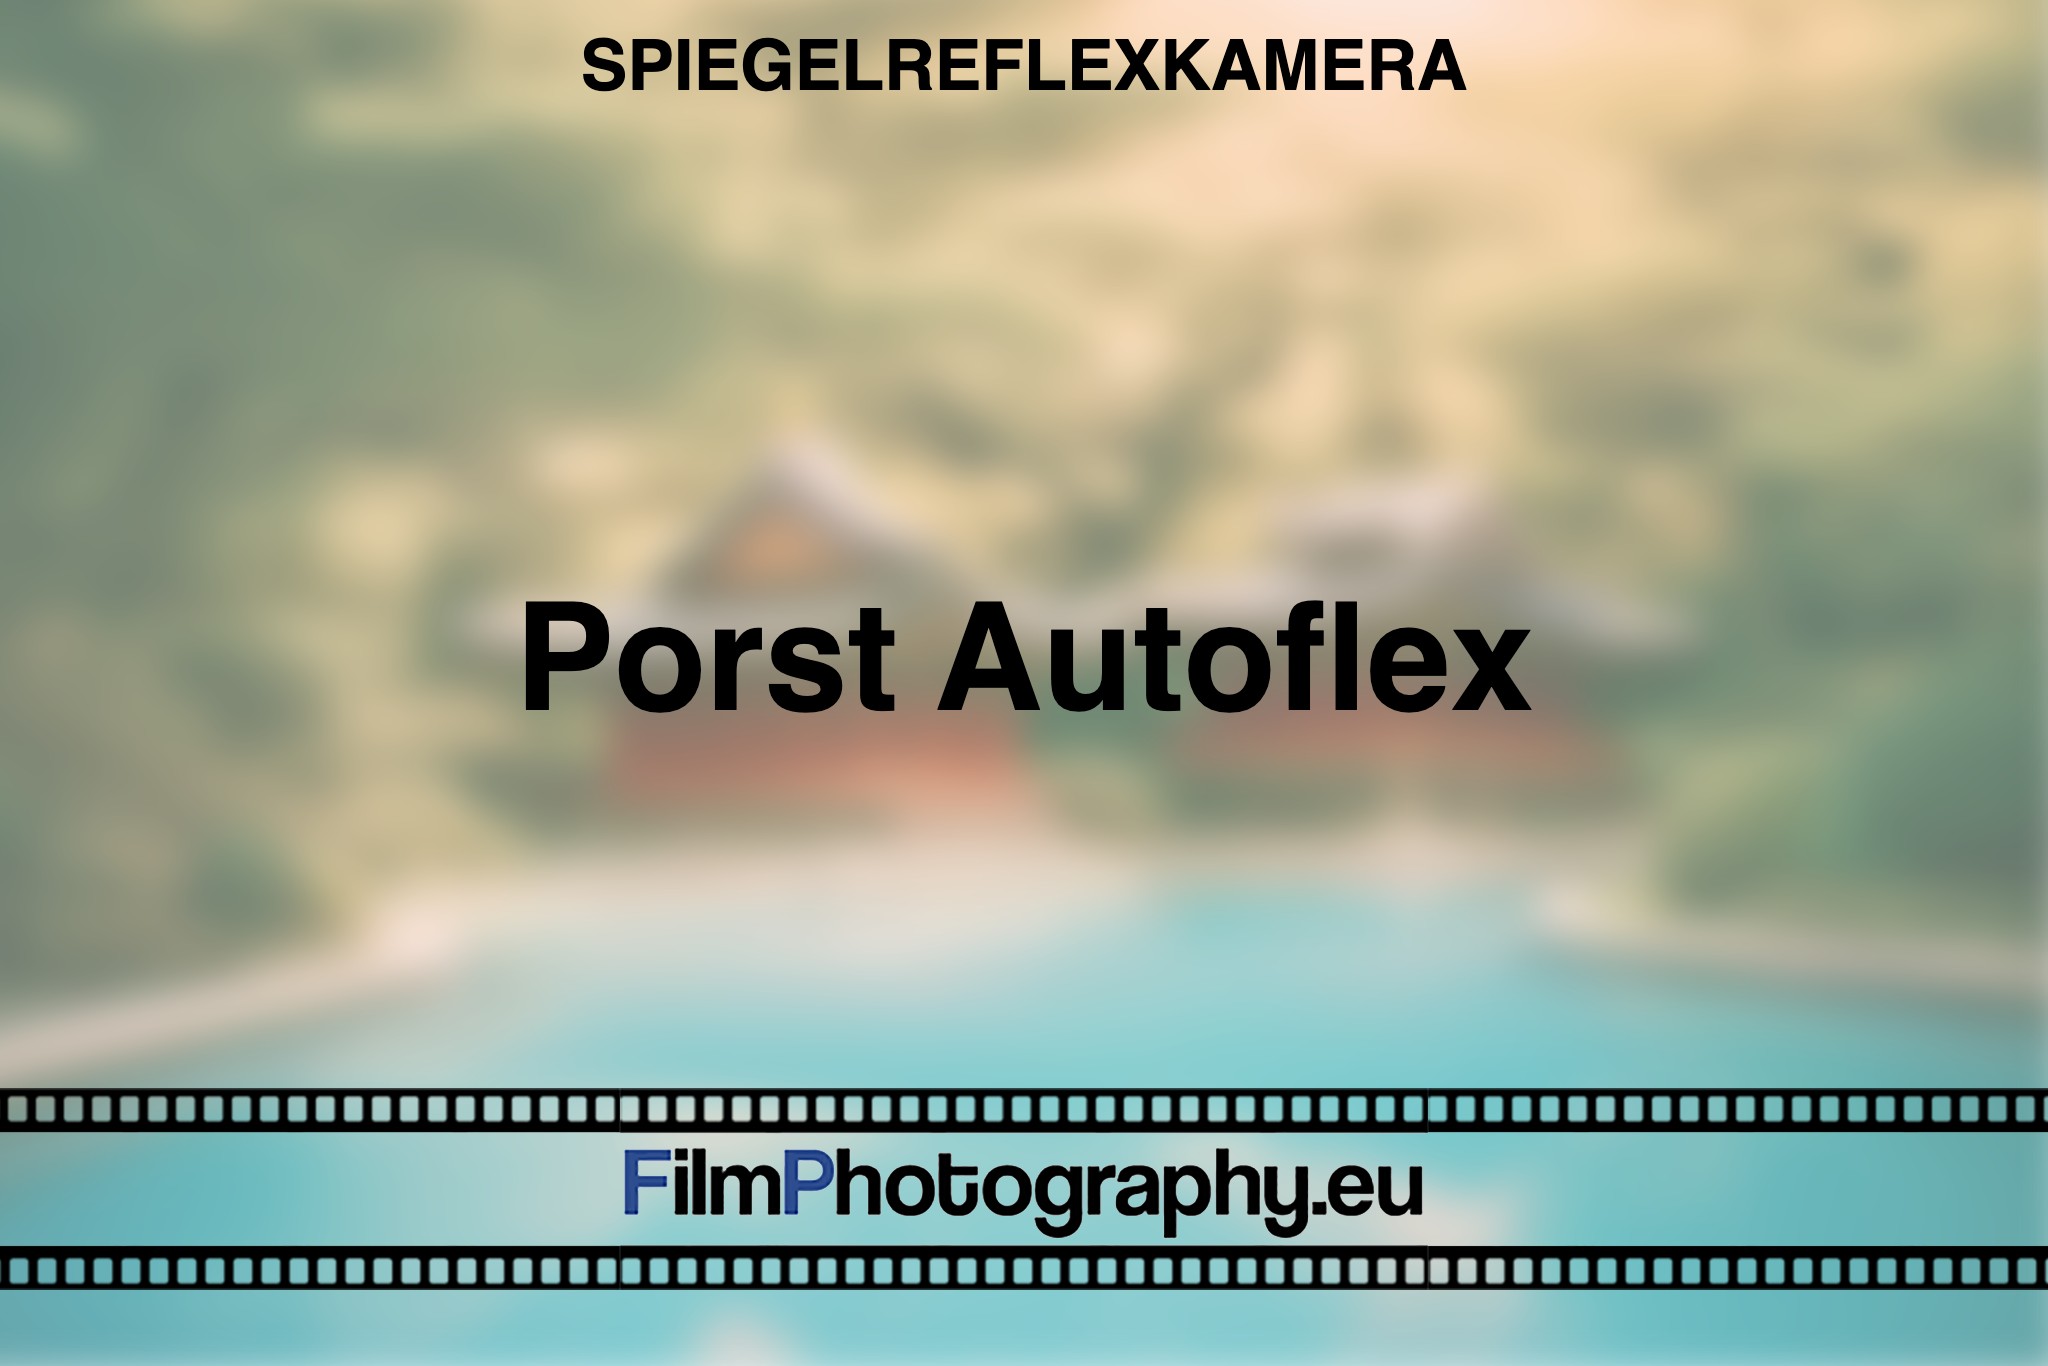 porst-autoflex-spiegelreflexkamera-bnv